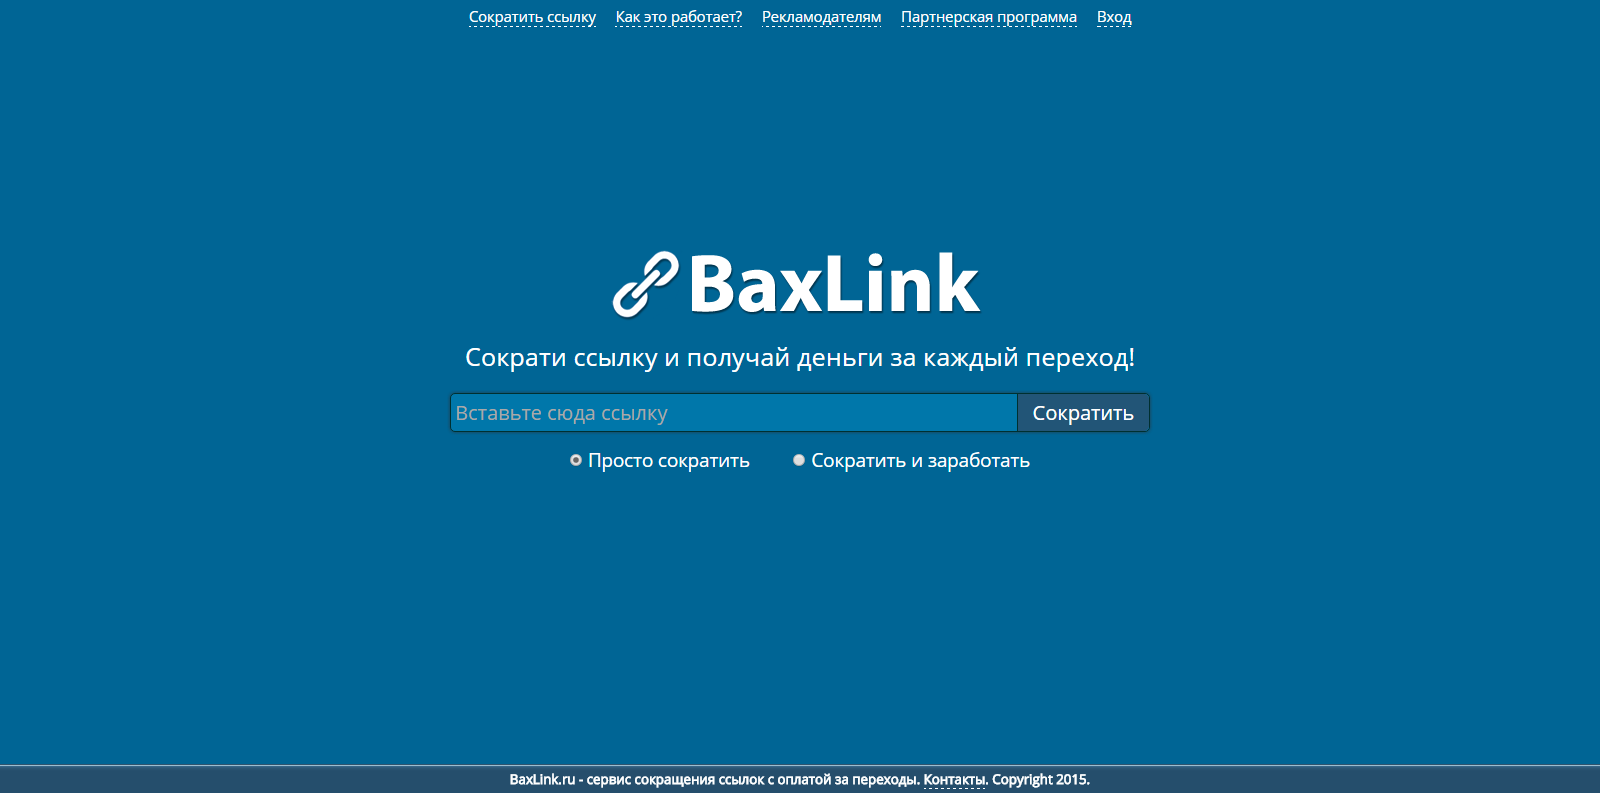 baxlink